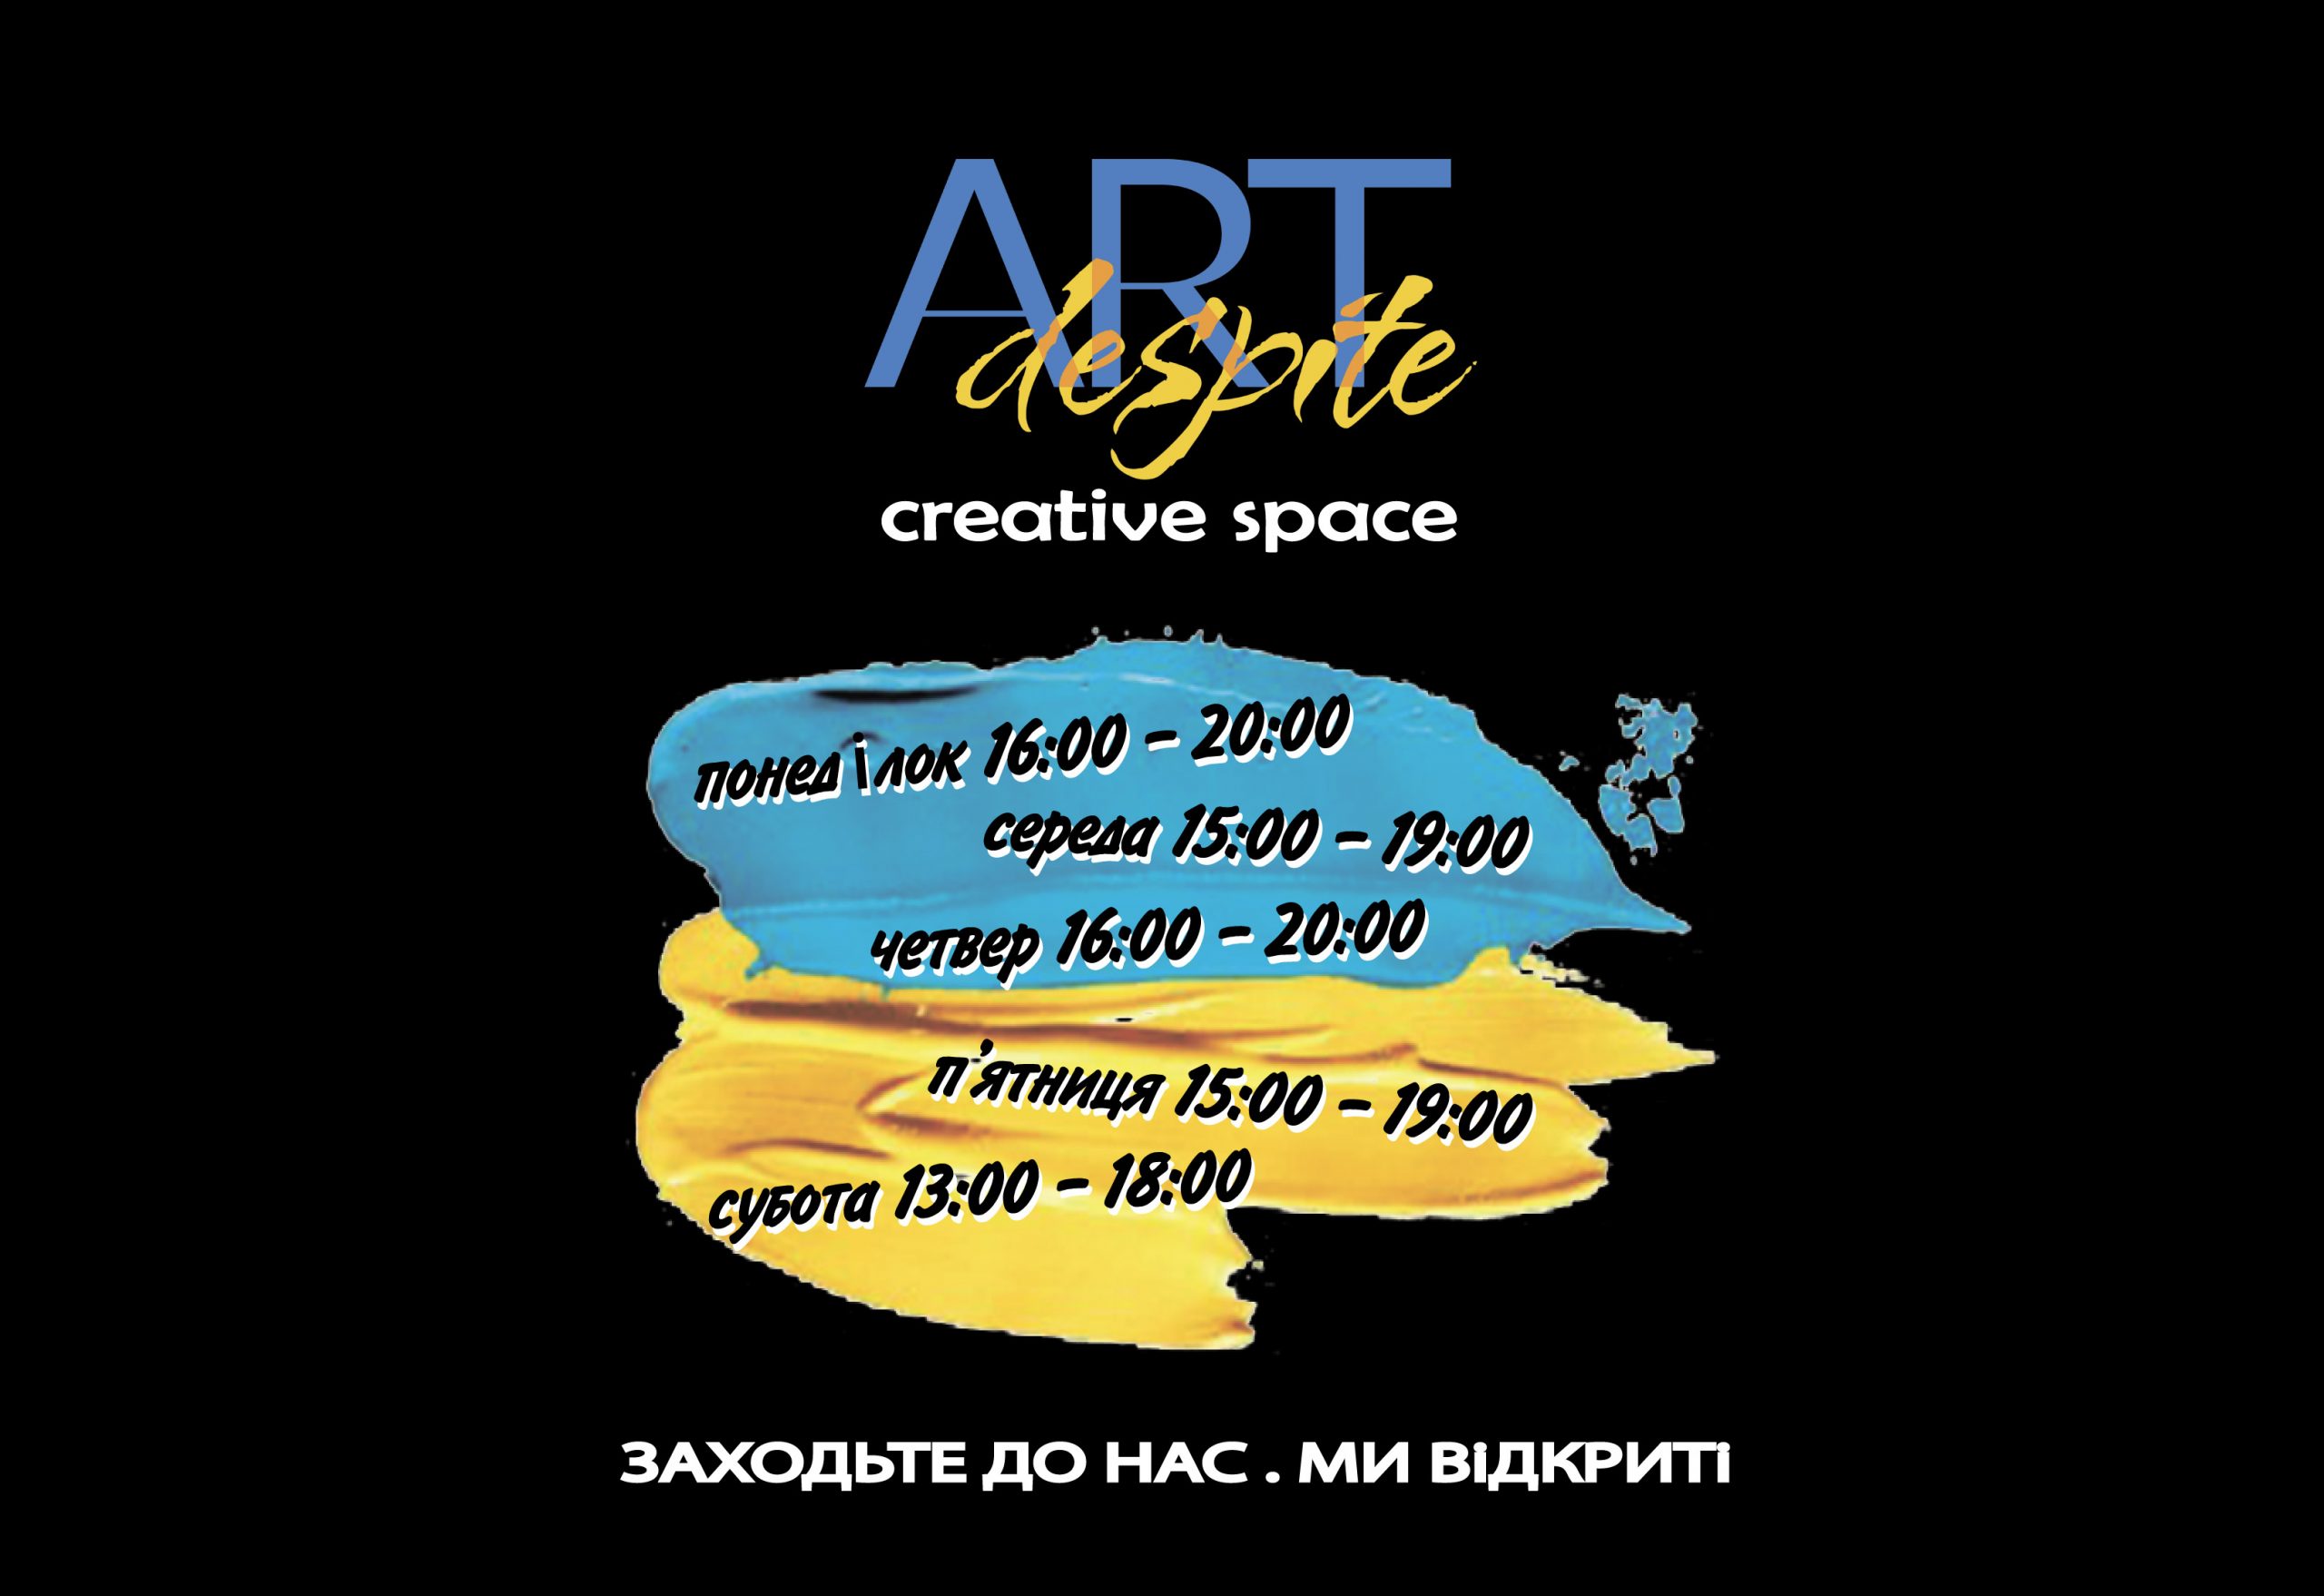 ARTdespite – галерея і креативний простір